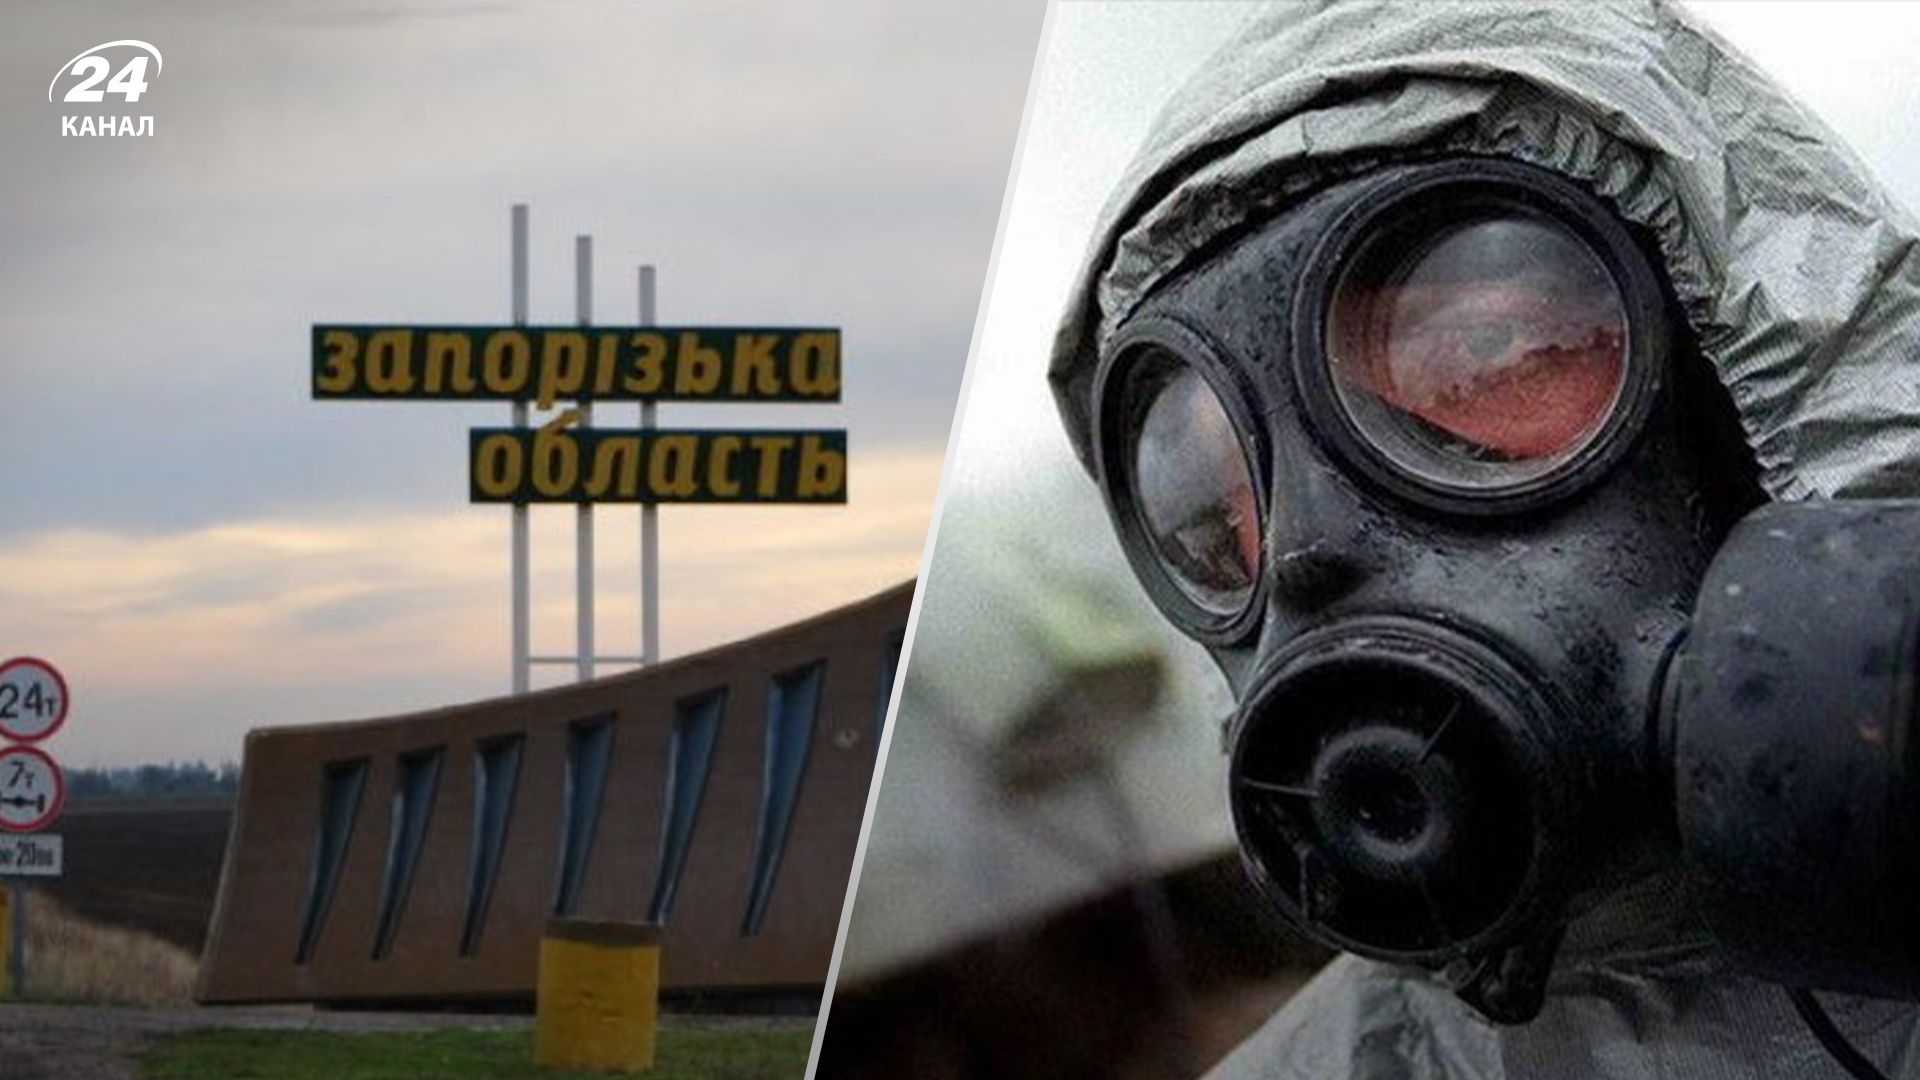 Спецслужбы России начали осуществлять провокацию с химическим оружием на Запорожье, – ГУР - 24 Канал